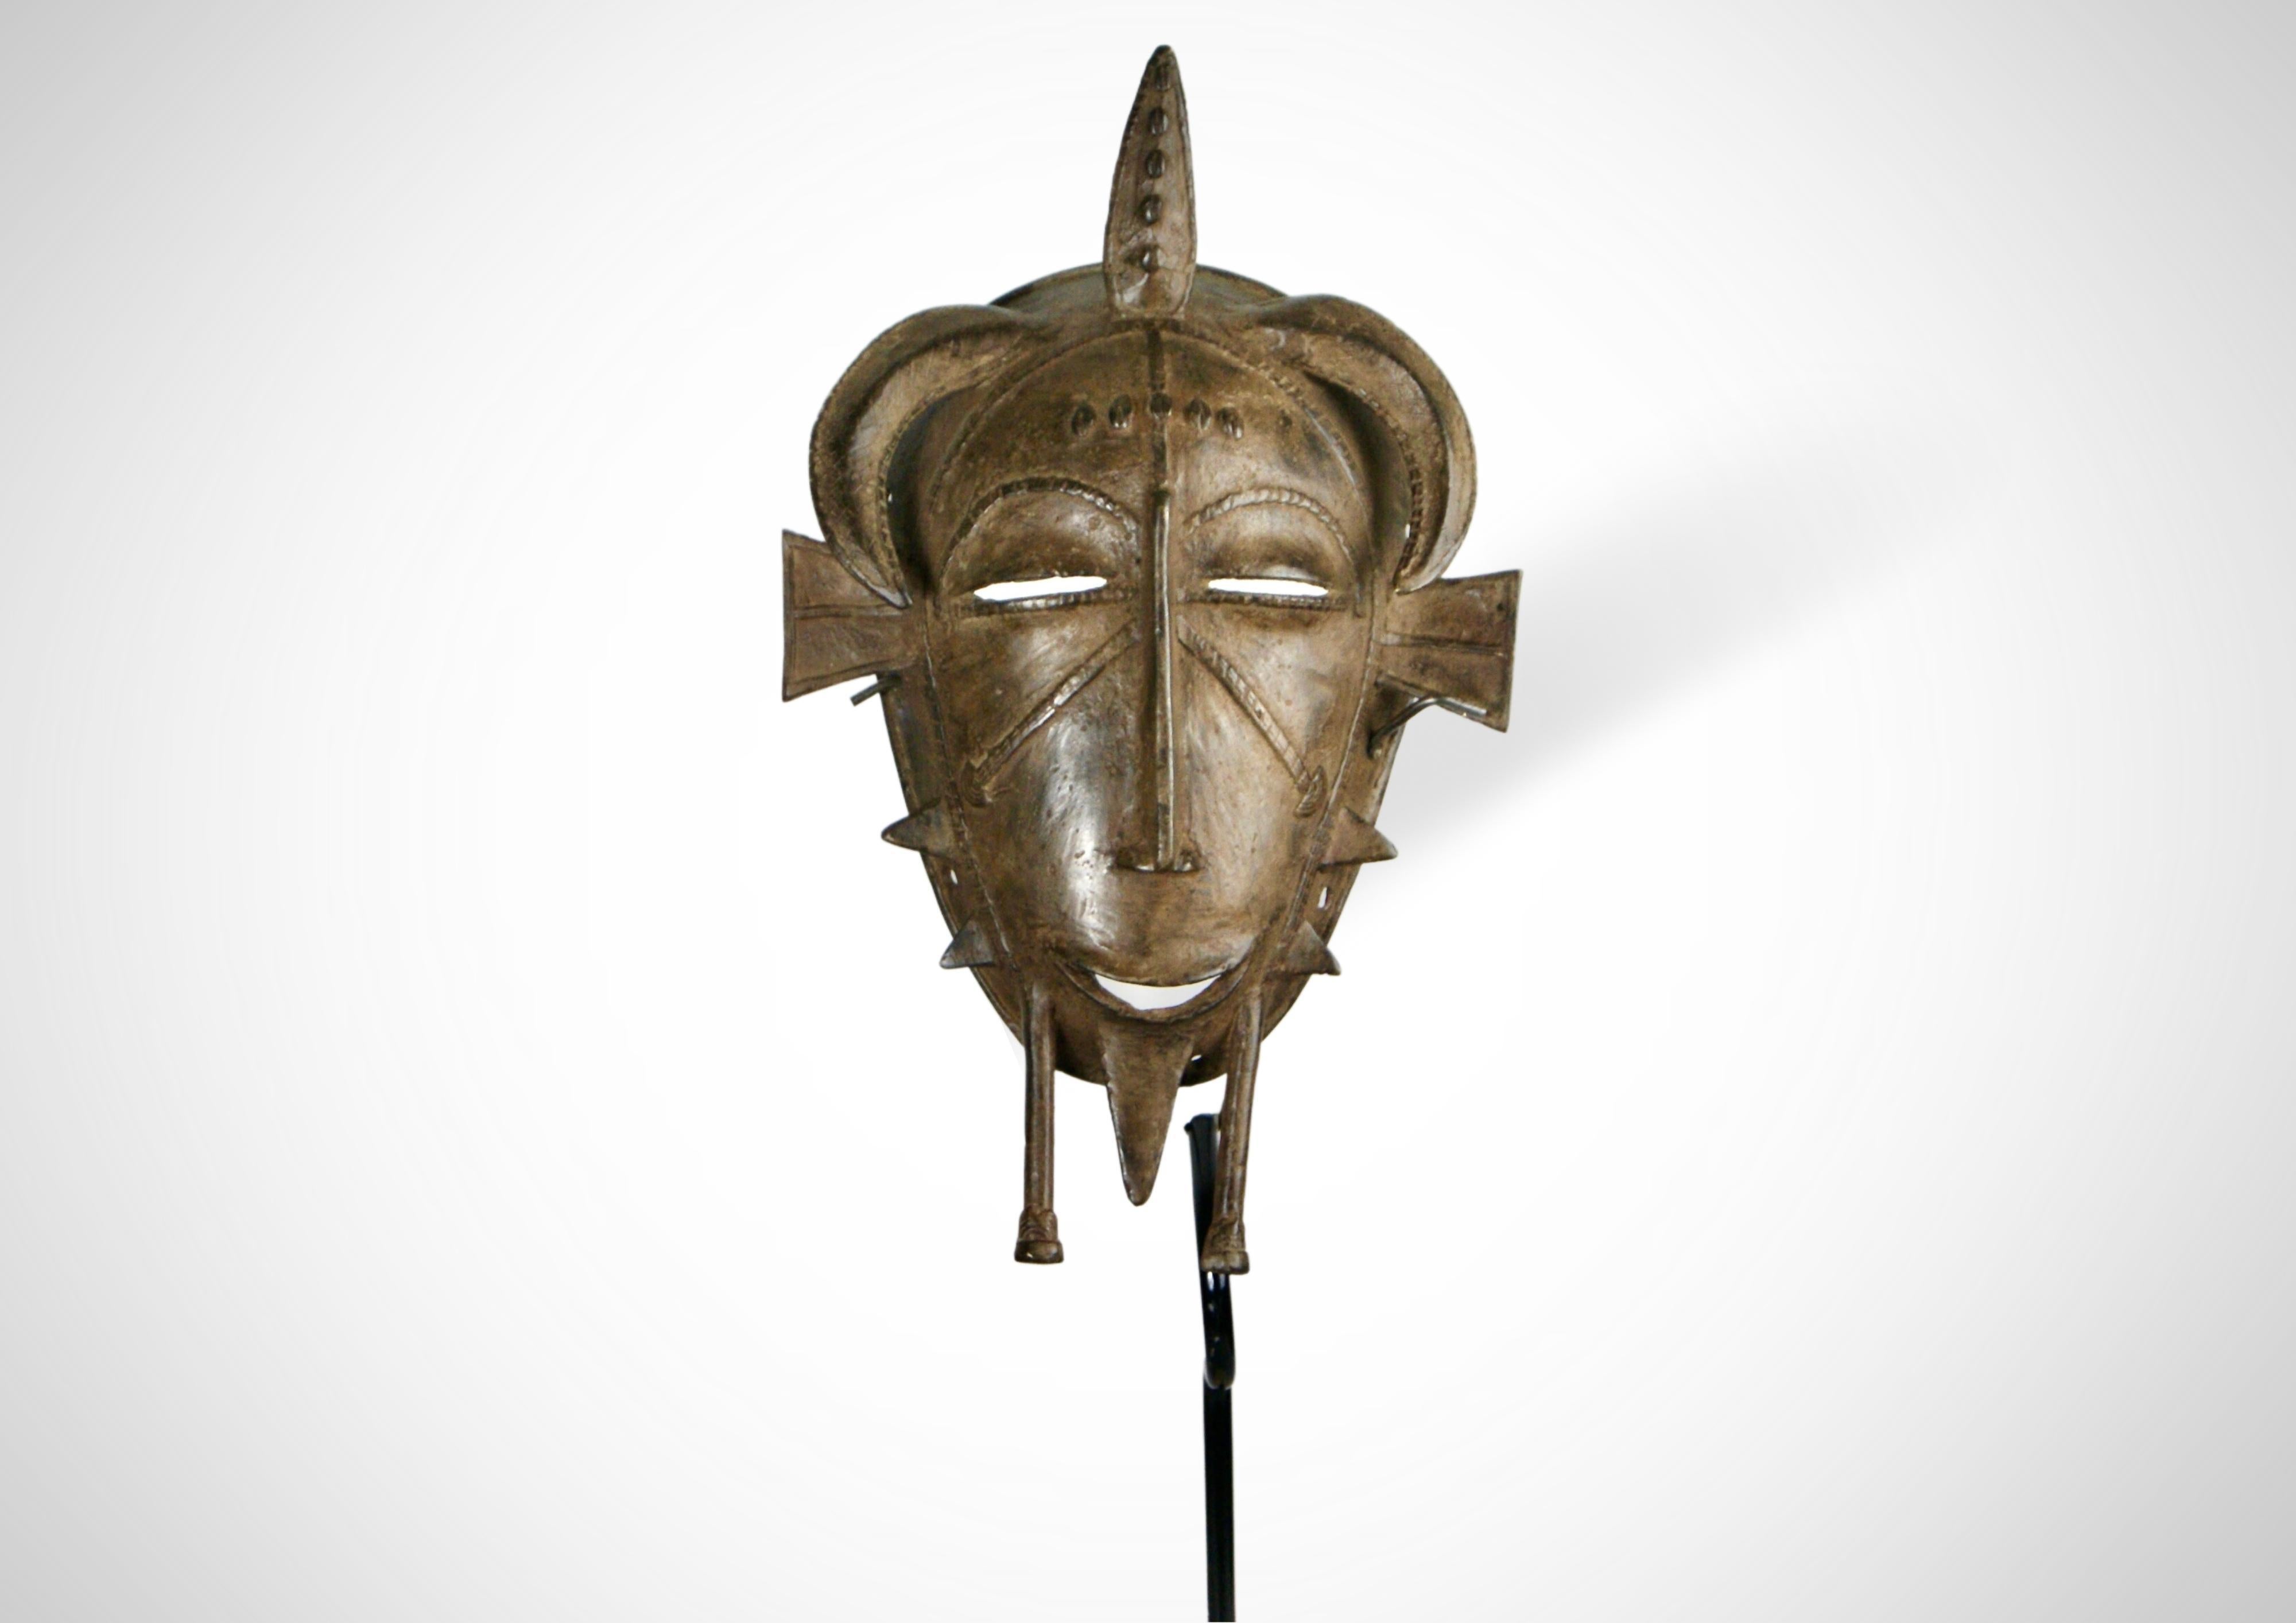 Masque facial ancestral en bronze coulé Senufo (Kpelie) de Côte d'Ivoire, Afrique de l'Ouest.
Fabriqué selon la technique de la cire perdue.
Traditionnellement, le 